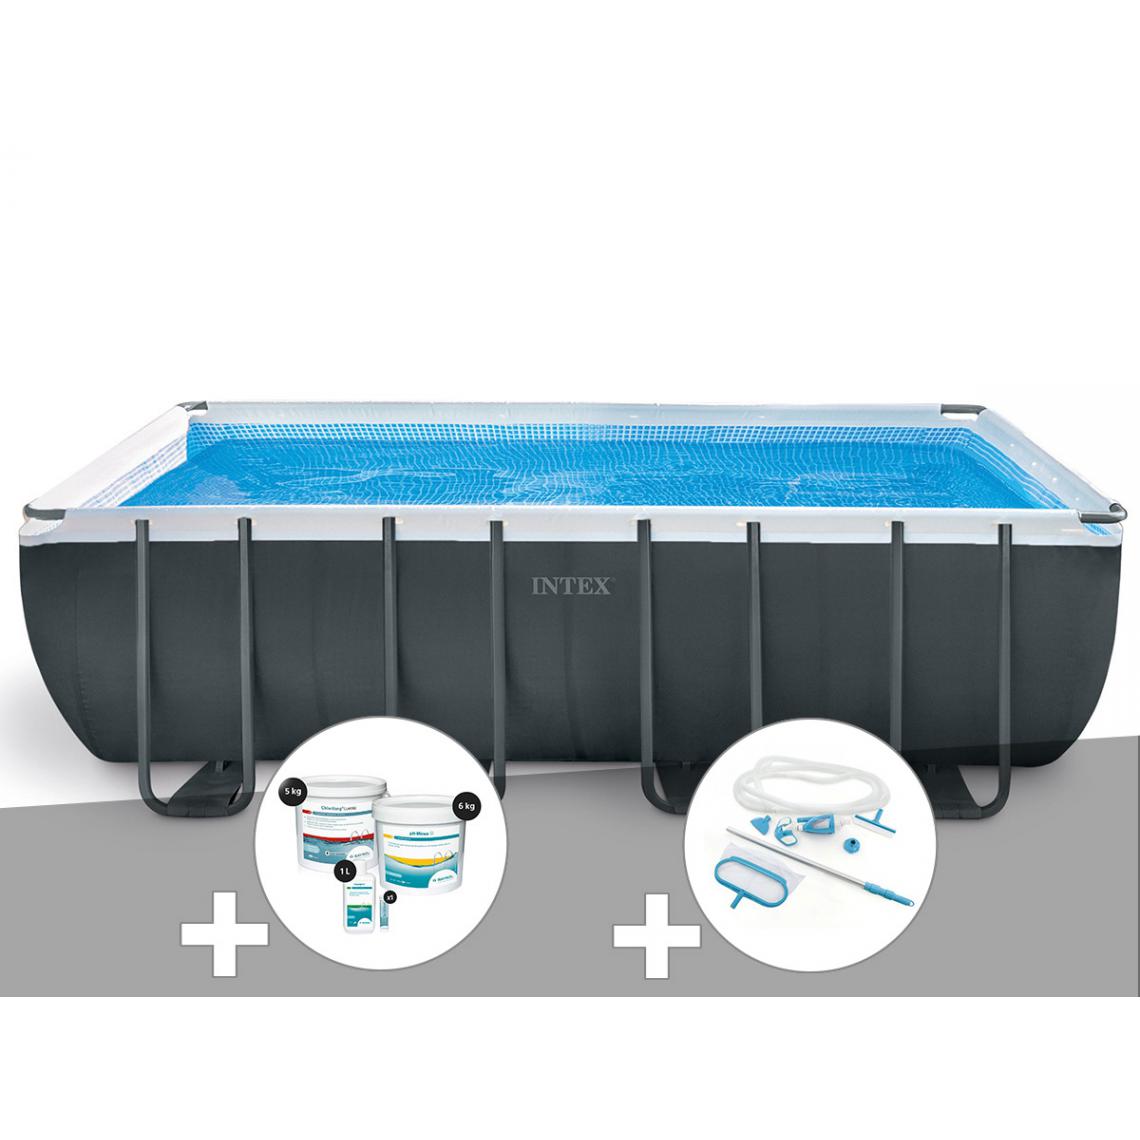 Intex - Kit piscine tubulaire Intex Ultra XTR Frame rectangulaire 5,49 x 2,74 x 1,32 m + Kit de traitement au chlore + Kit d'entretien - Piscine Tubulaire